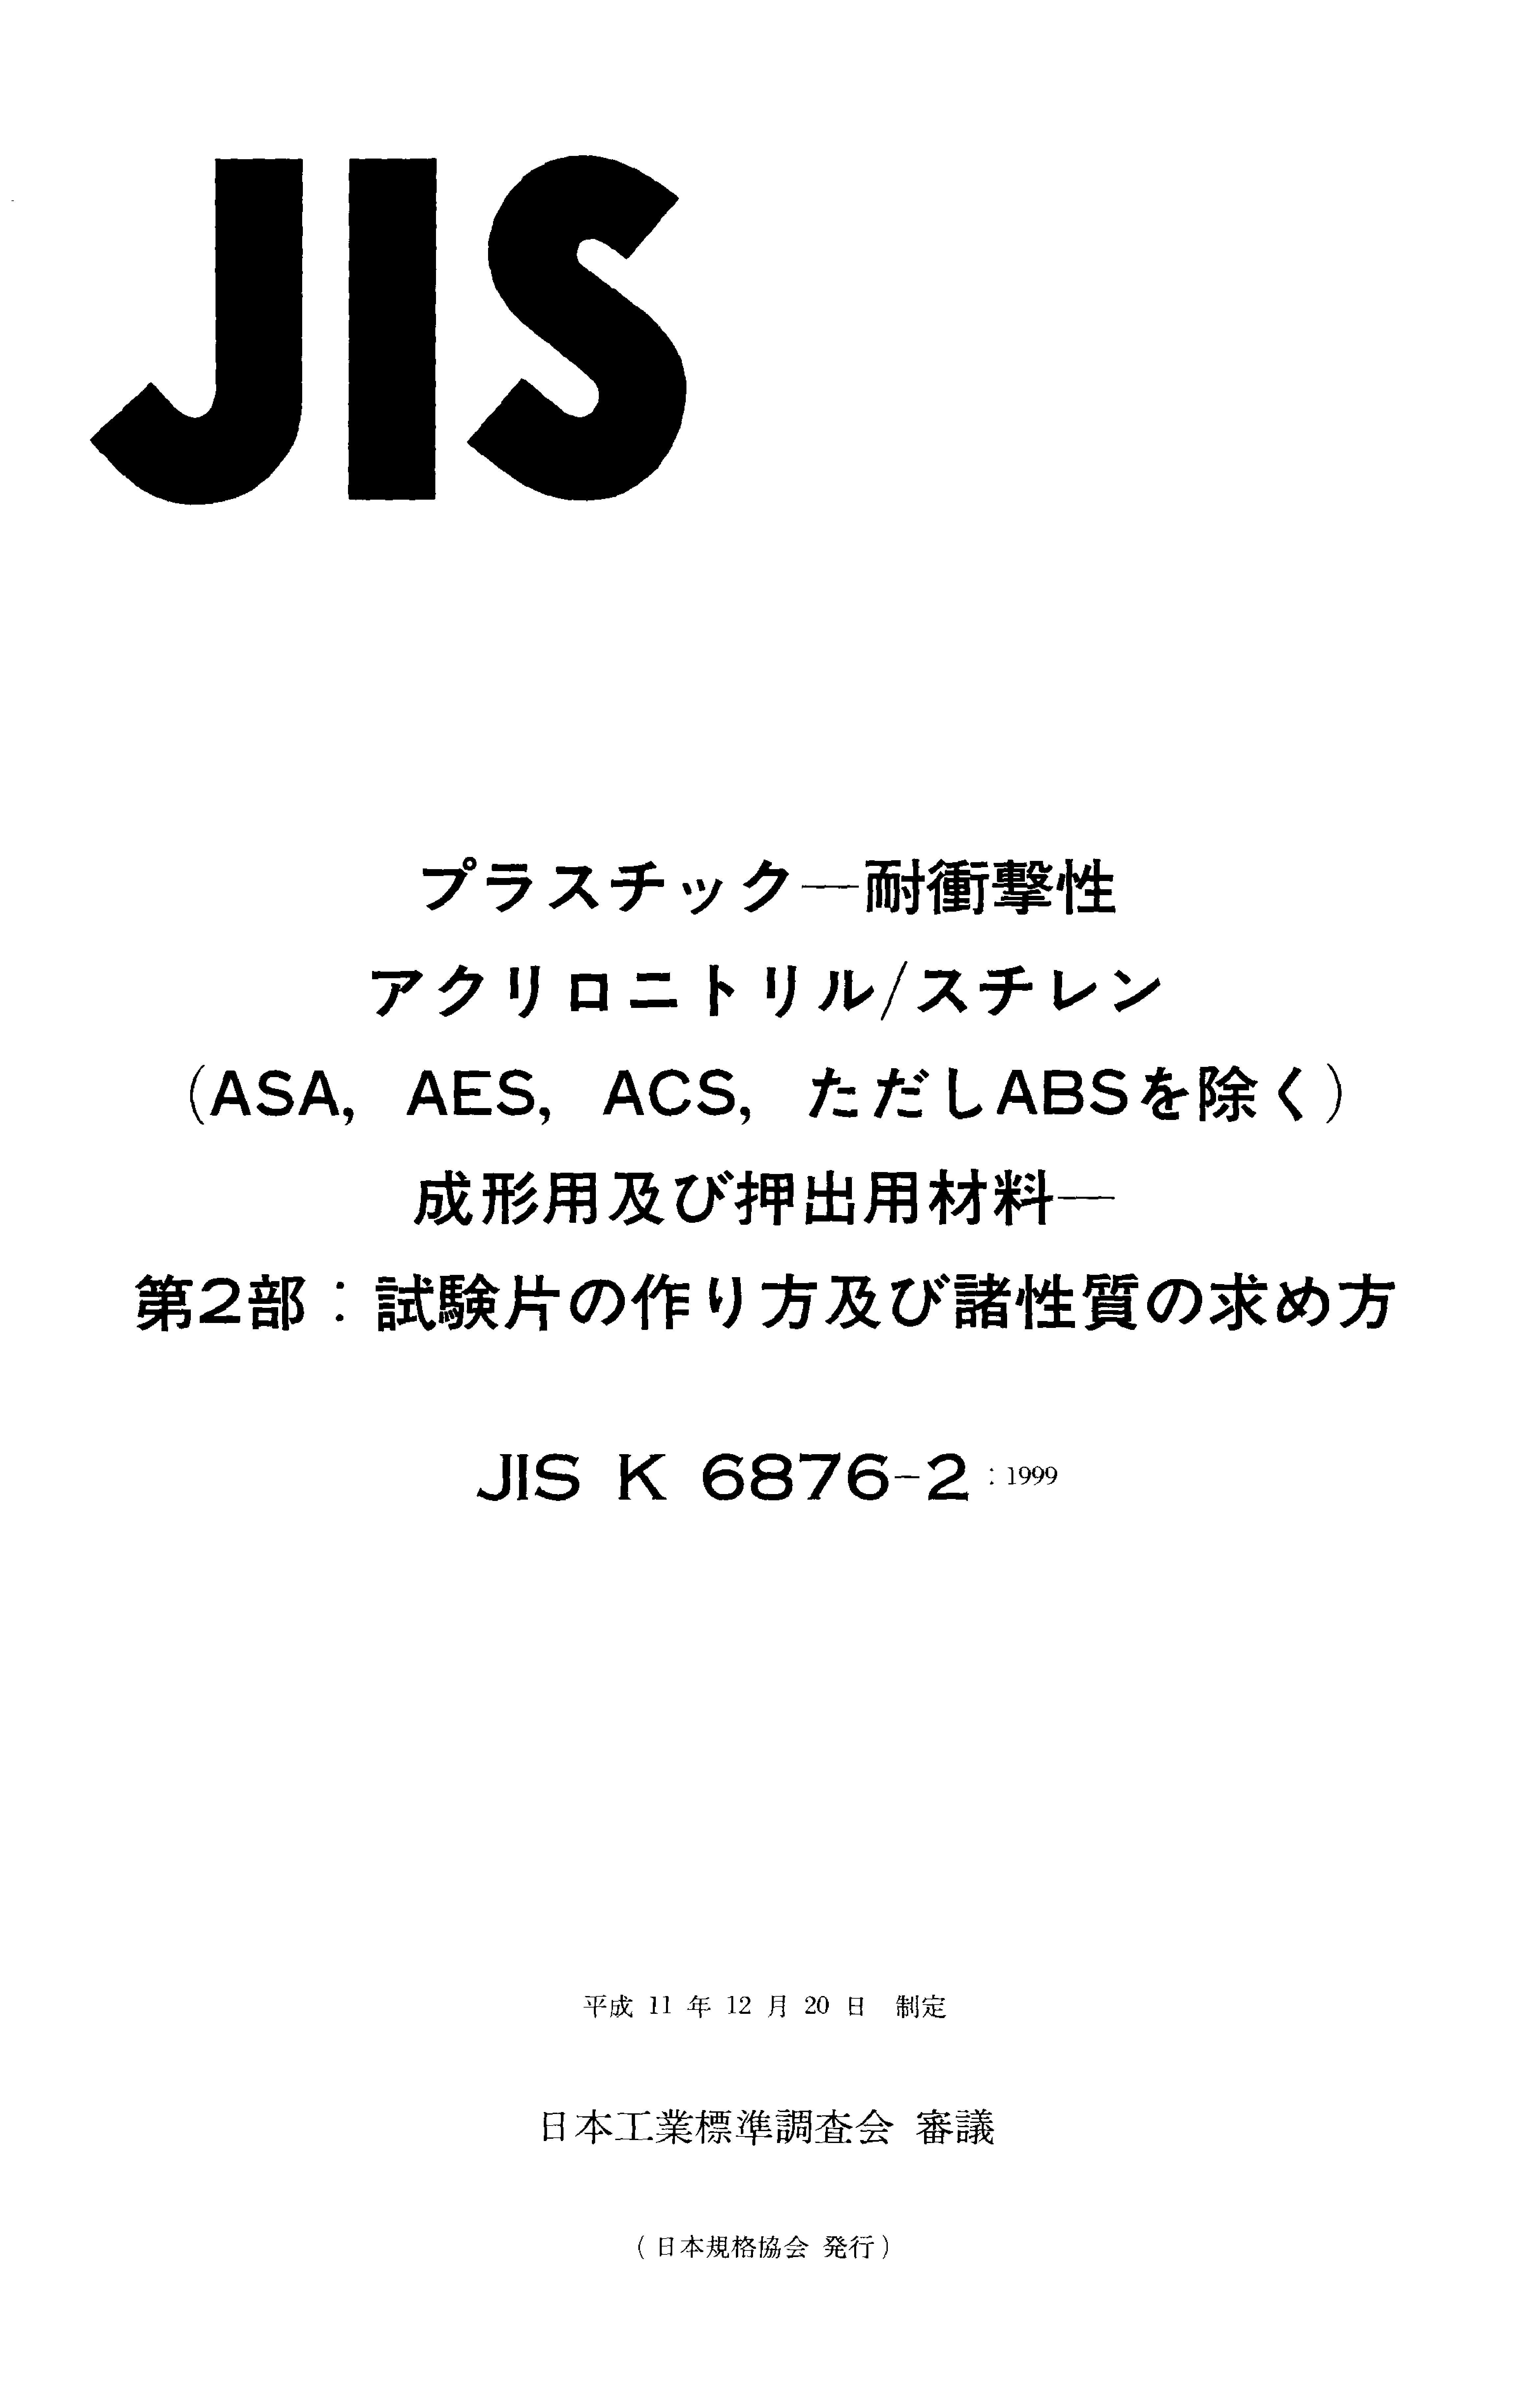 JIS K 6876-2:1999